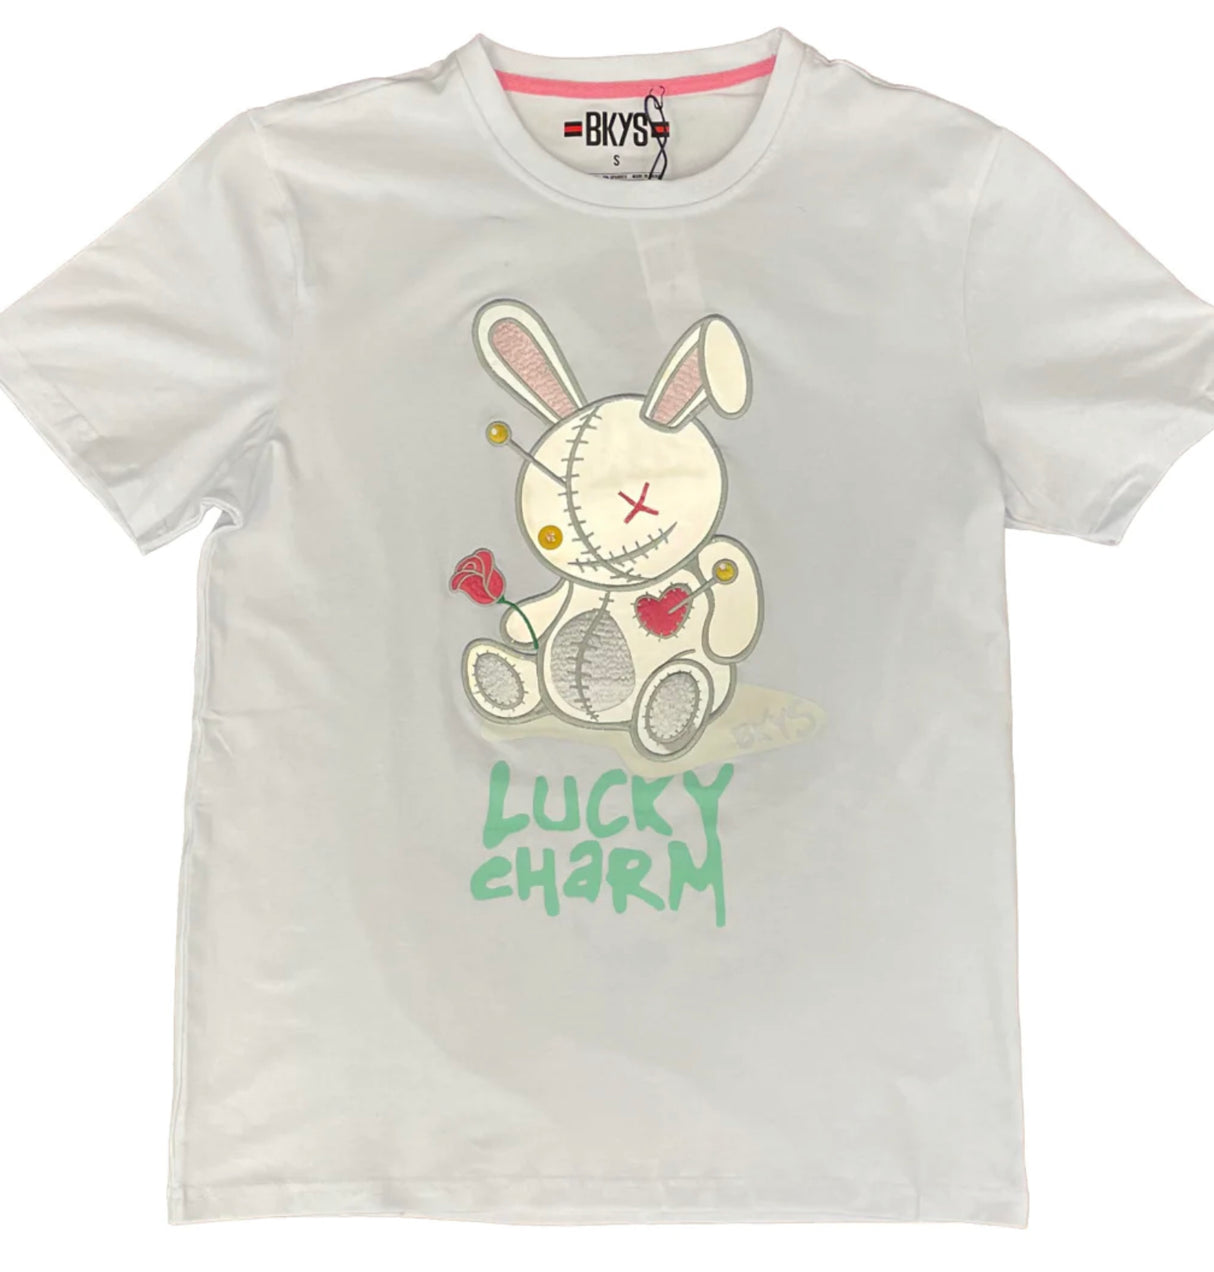 BKYS Shirt - Lucky Charm Bunny - Teal/Grey